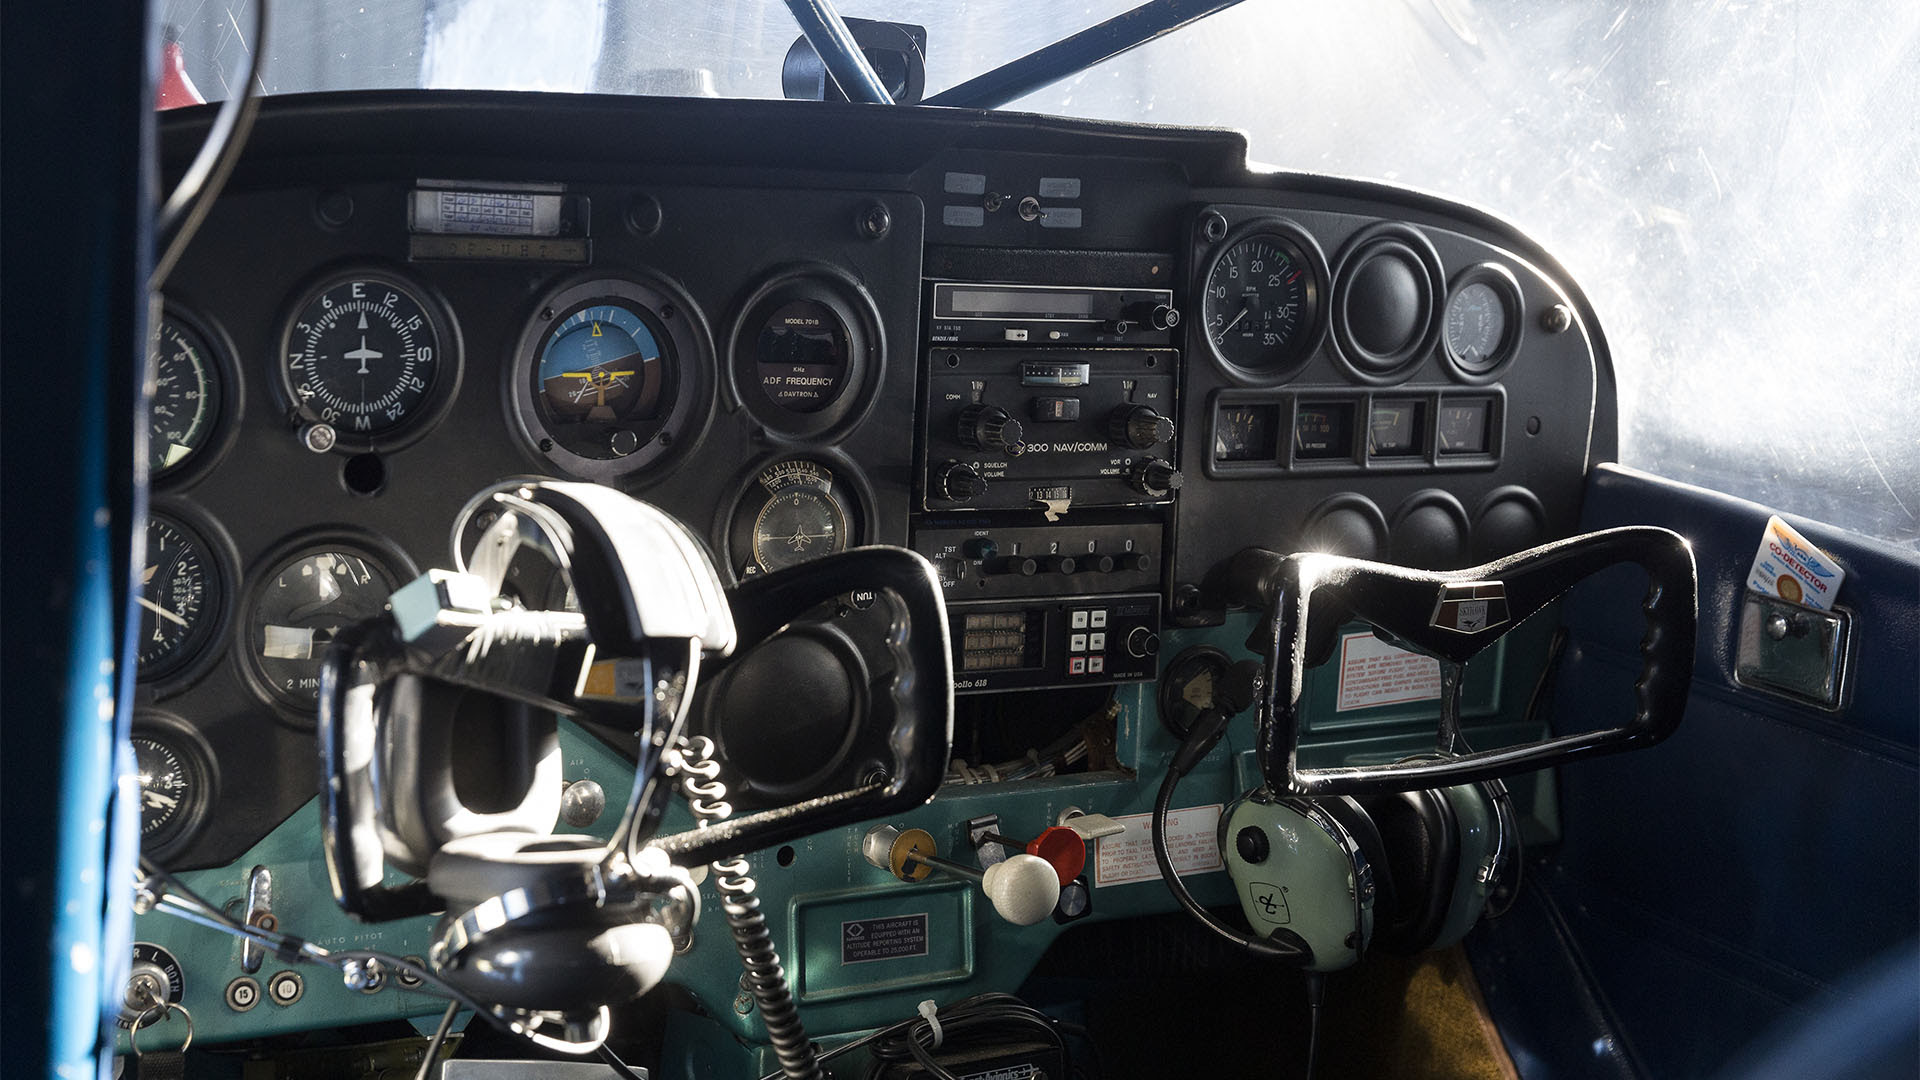 Los controles de un Cessna 172, una de las aeronaves más fáciles de volar, según los expertos de la aviación. (Photo by Thierry Tronnel/Corbis via Getty Images)